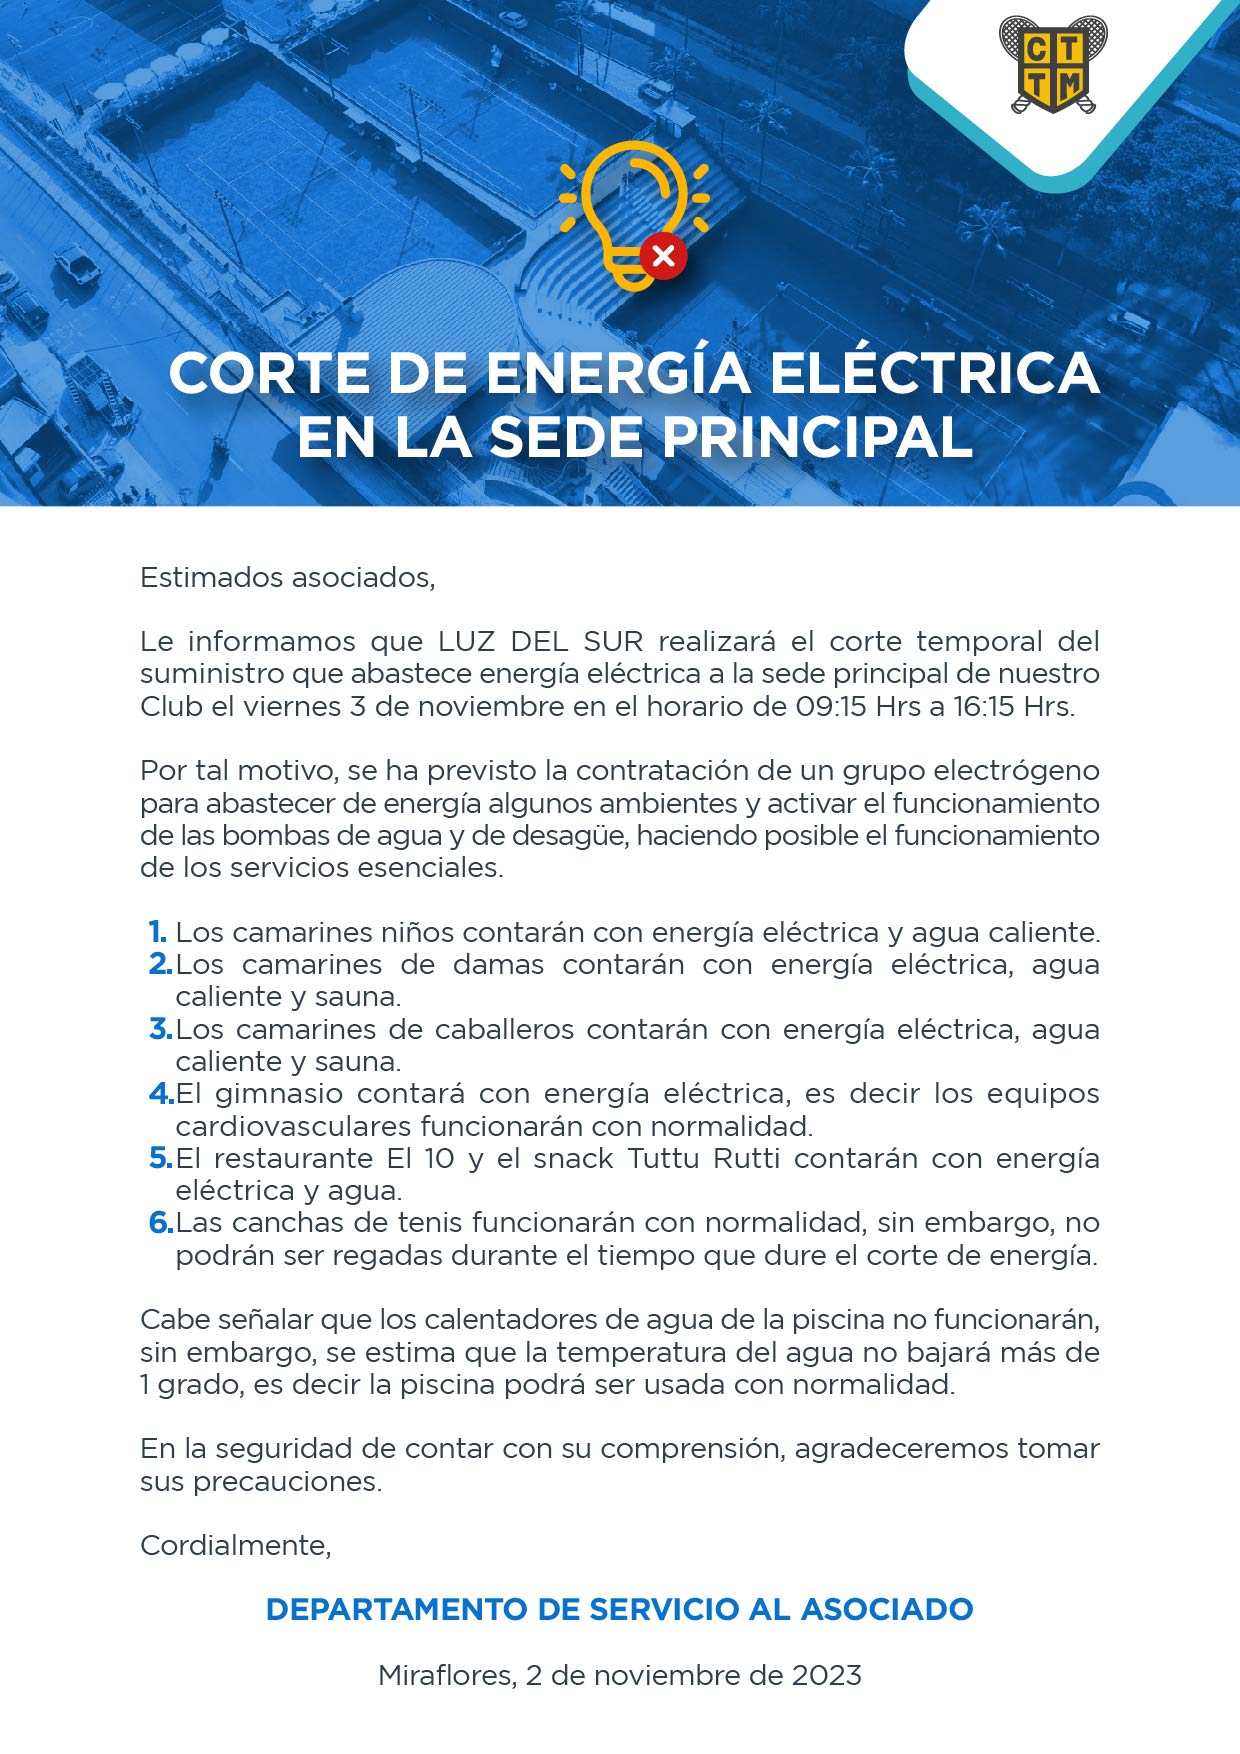 CORTE DE ENERGÍA ELÉCTRICA EN LA SEDE PRINCIPAL